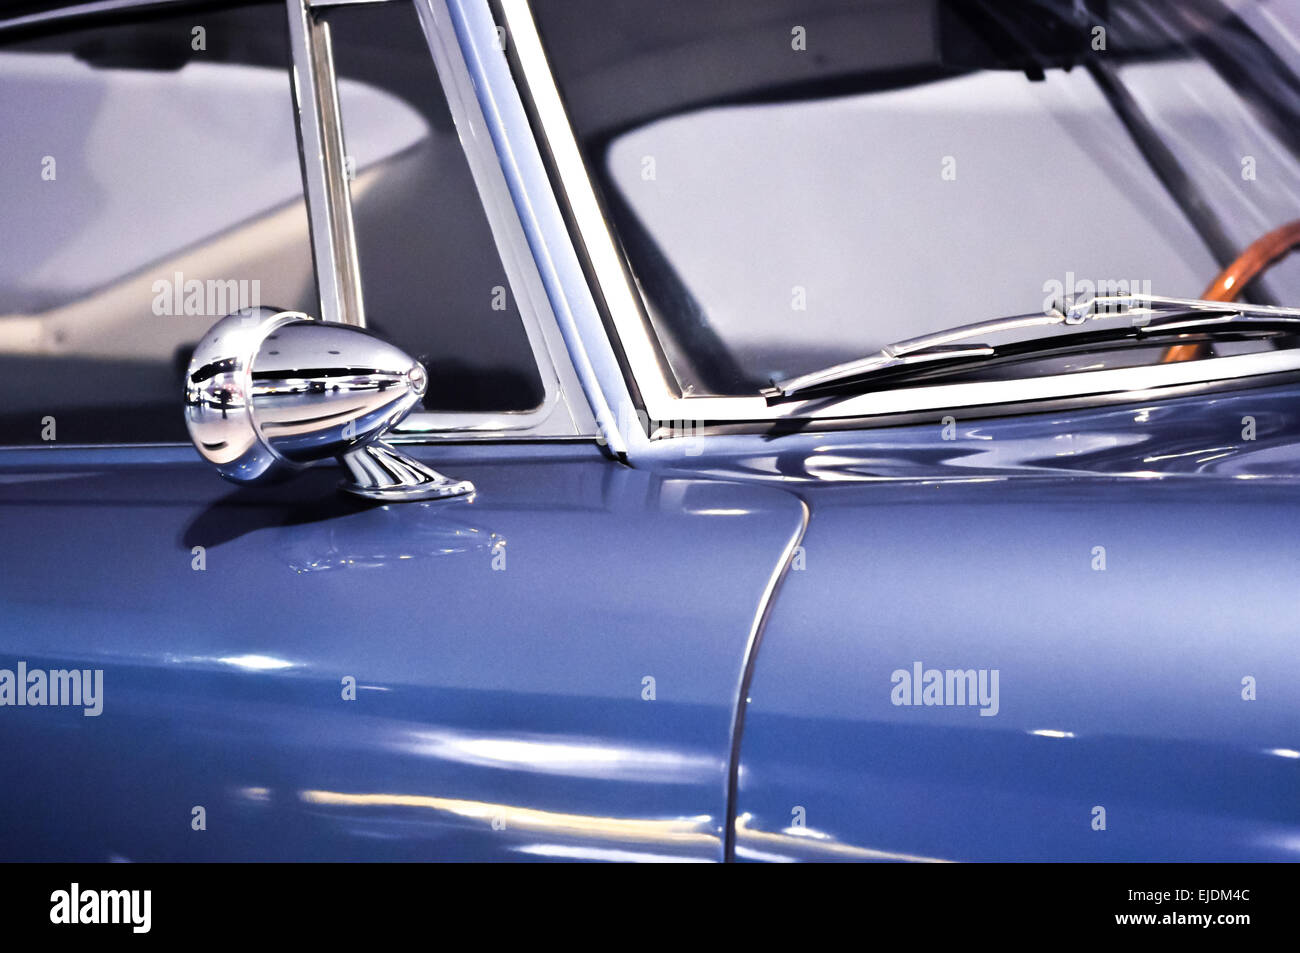 Rückspiegel und Auto Scheibenwischer auf blauen oldtimer